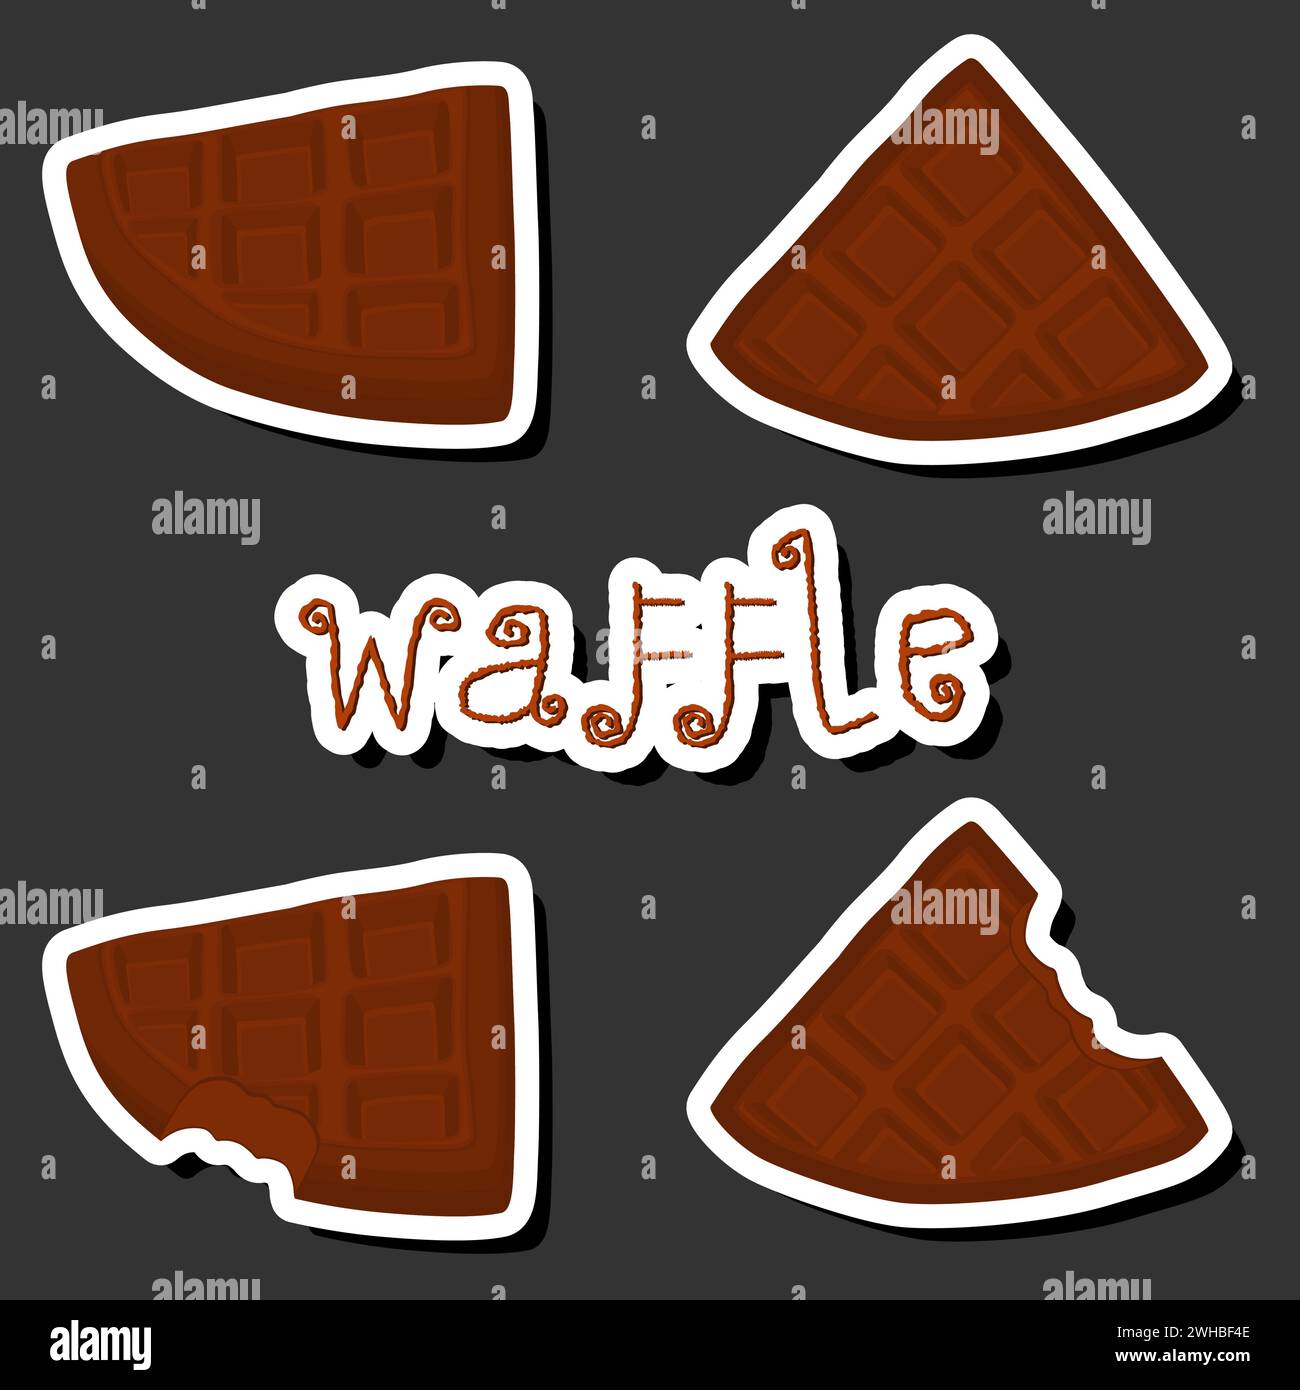 Illustrazione del grande kit a tema, diversi tipi di waffle biscotti con celle, biscotti da dessert, waffle con biscotti dalla forma gustosa, biscotti freschi e morbidi, Illustrazione Vettoriale